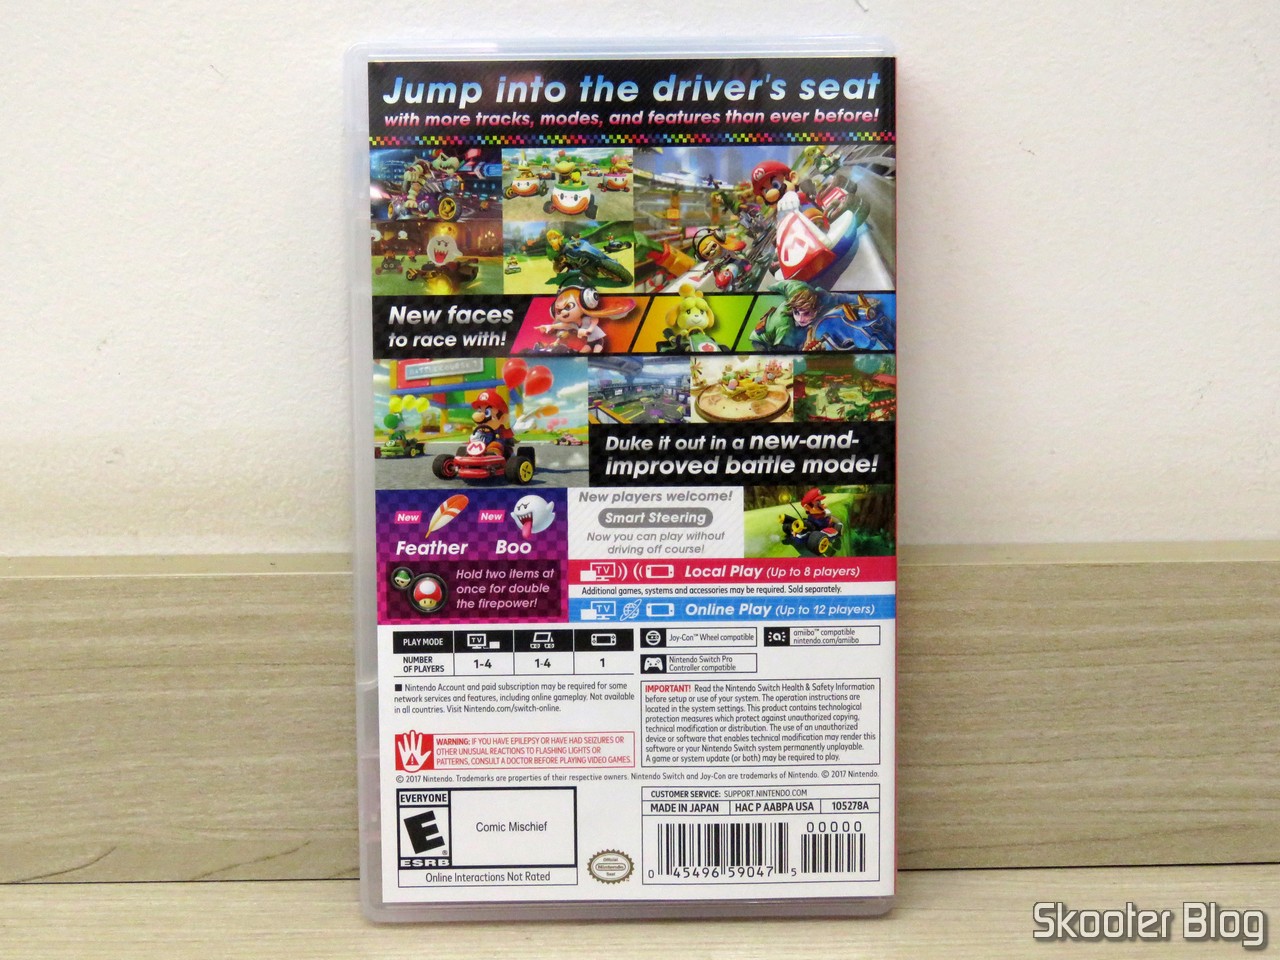 Capa PS3 Controle Case - Mario & Luigi em Promoção na Americanas